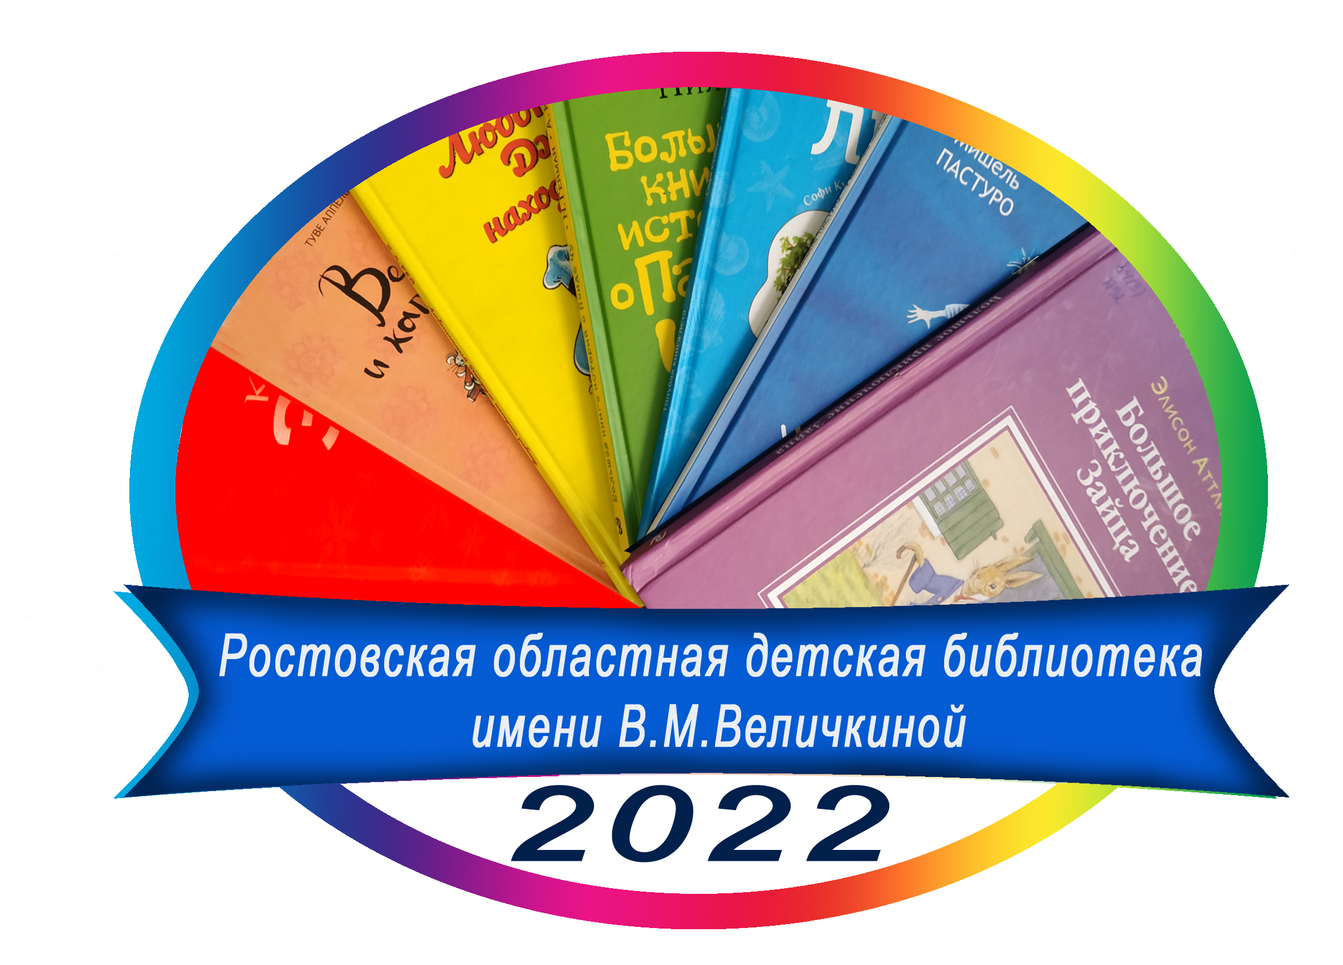  Логотип областного литературно-творческого конкурса «Книжная радуга» 